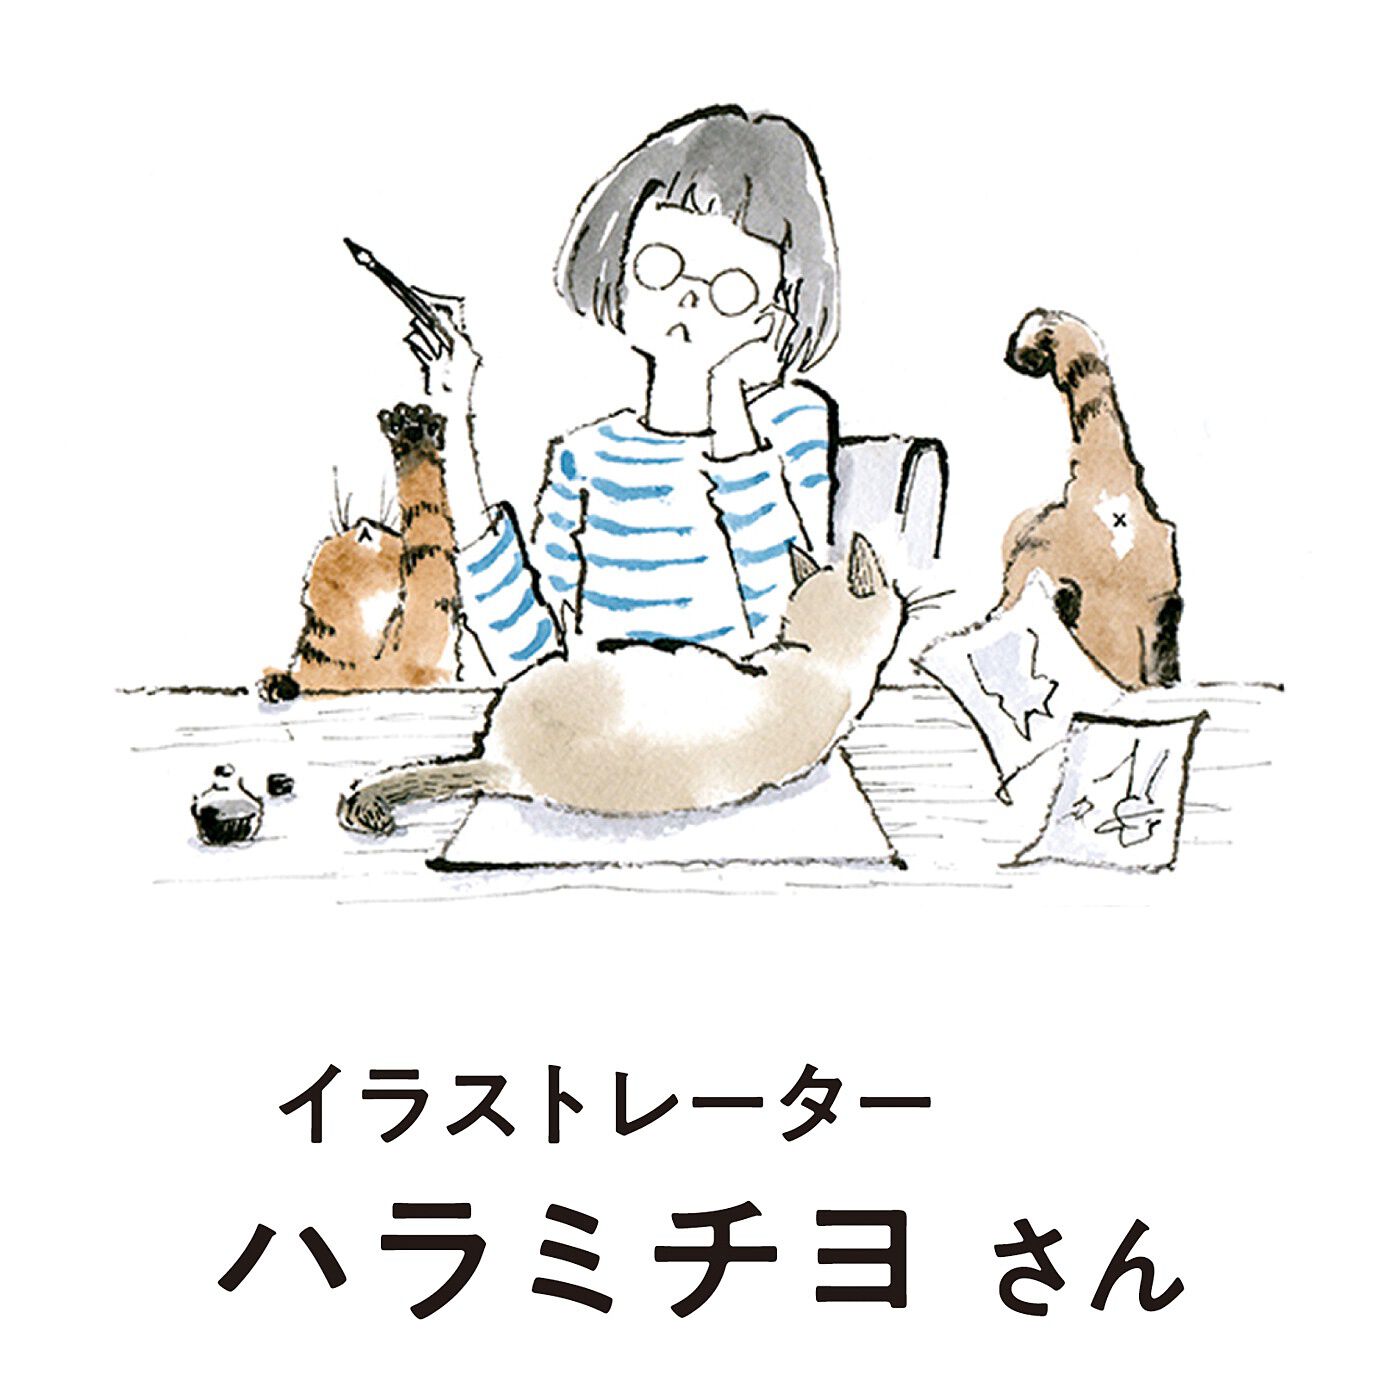 猫部|福よこいこい　招き猫のガバっと開く長財布|保護ネコ3匹と同居中のイラストレーター。「Cats in the room.」の活動名で部屋でのんびり穏やかに過ごすネコたちや、耳カットのネコたちを描いています。　インスタグラム：@mimumoco　HP：http://michiyohara.com/